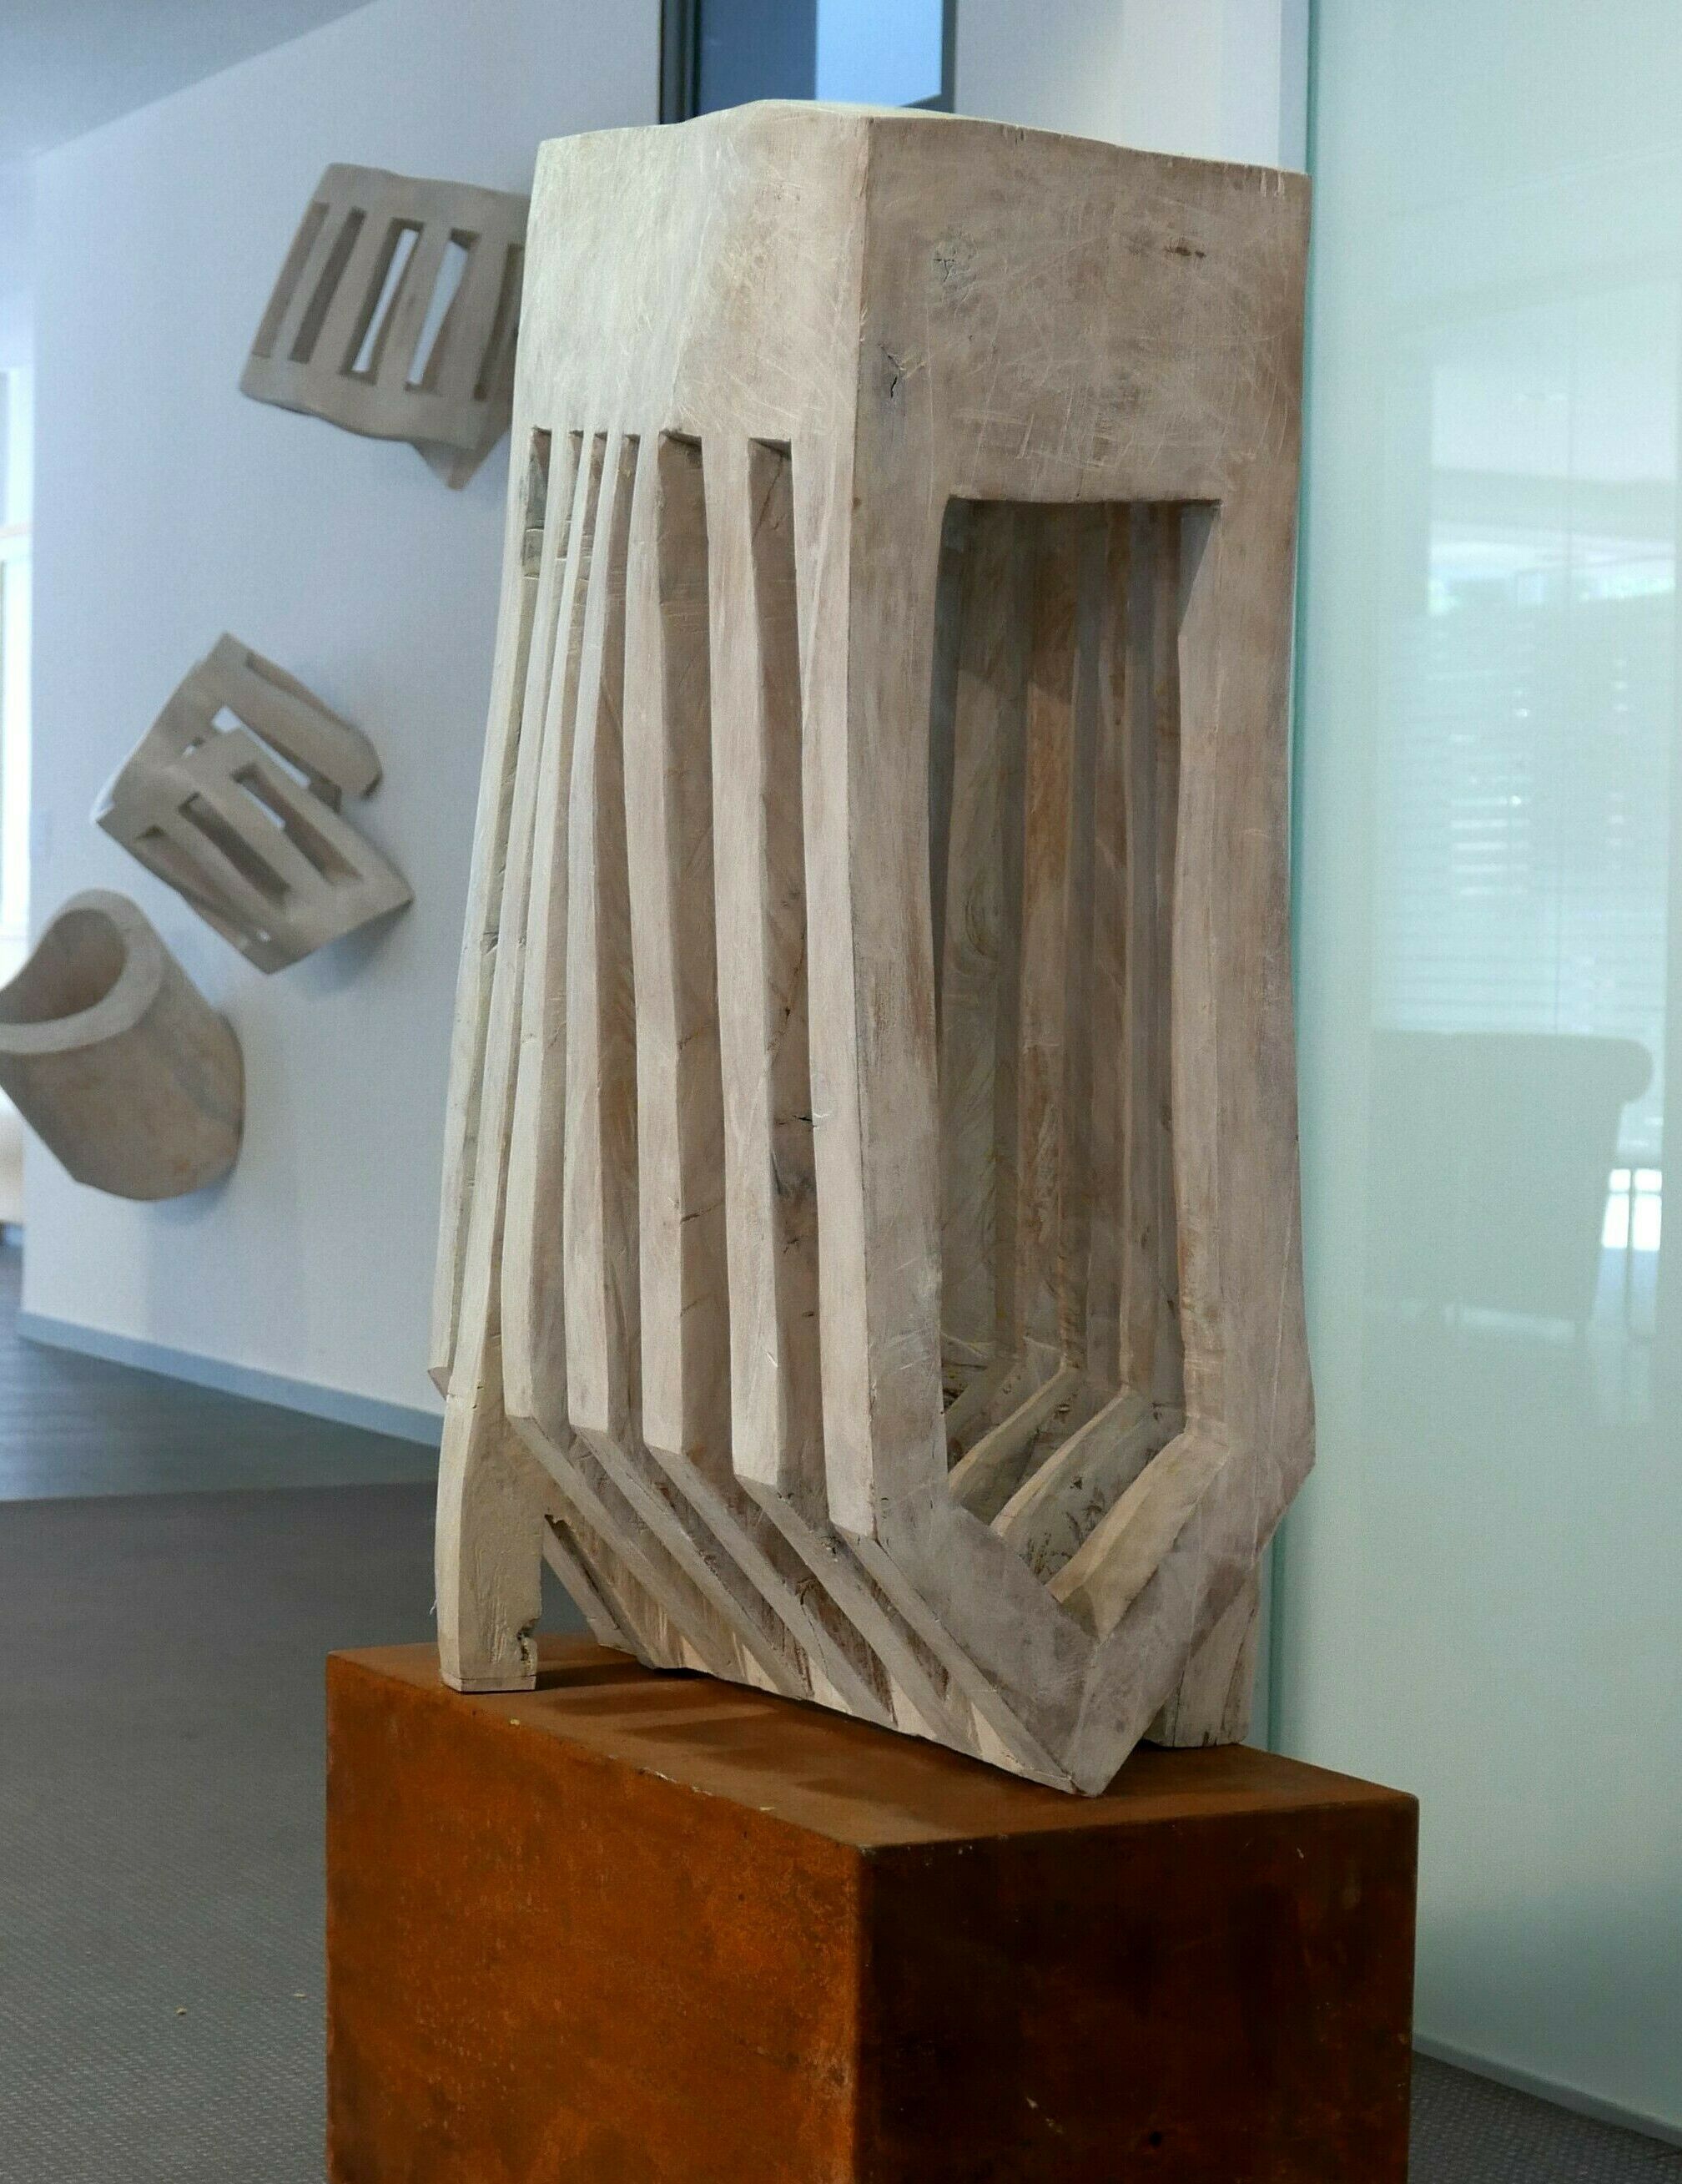 Sculpture "Large fan" (2016)